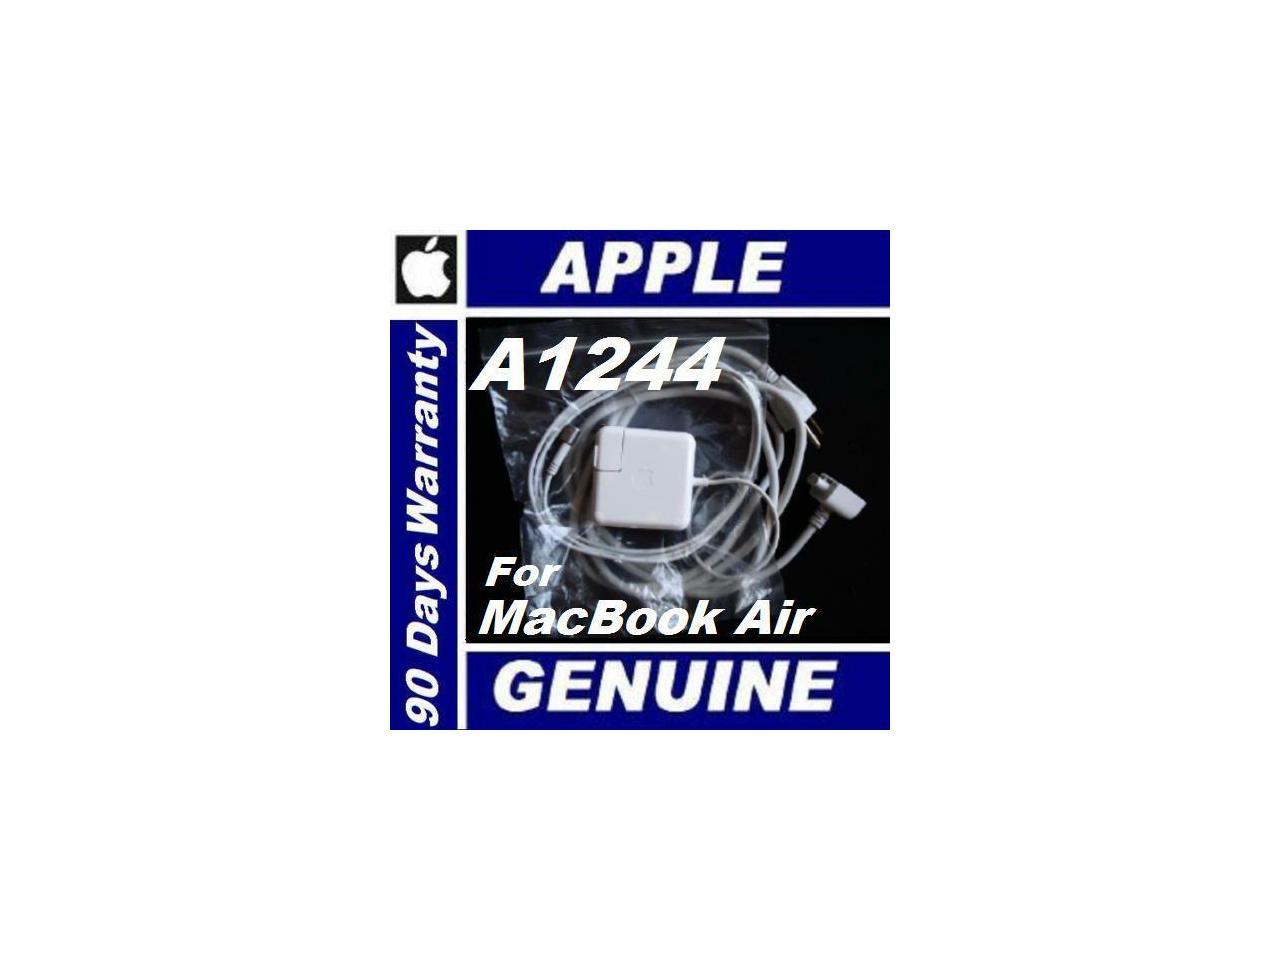 macbook air power cord best buy